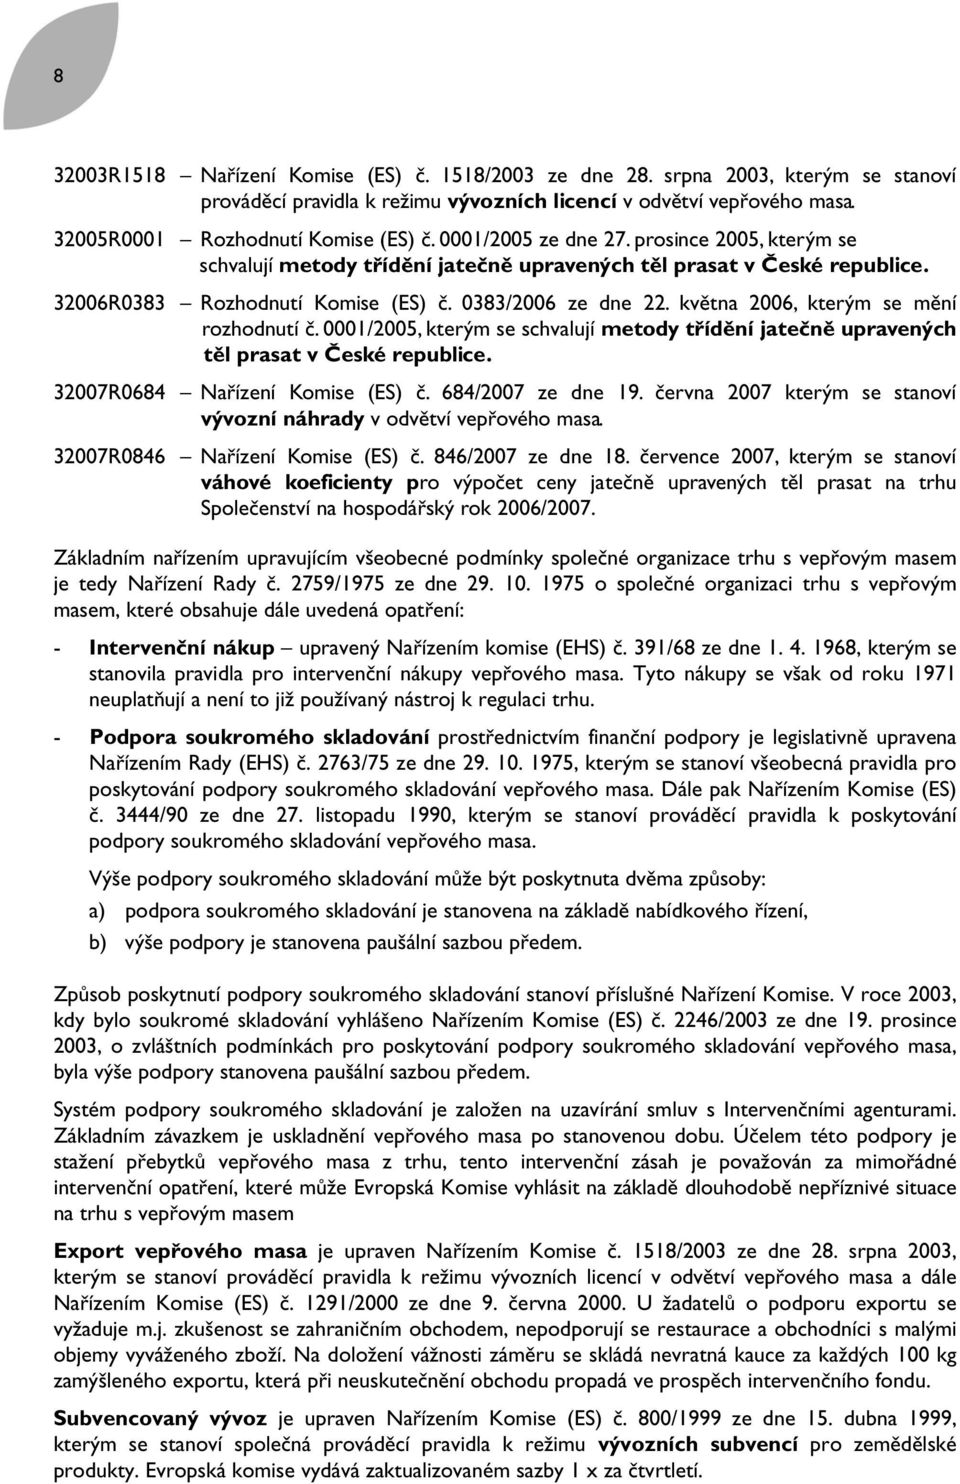 května 2006, kterým se mění srozhodnutí č. 0001/2005, kterým se schvalují metody třídění jatečně upravených rtěl prasat v České republice. 32007R0684 Nařízení Komise (ES) č. 684/2007 ze dne 19.